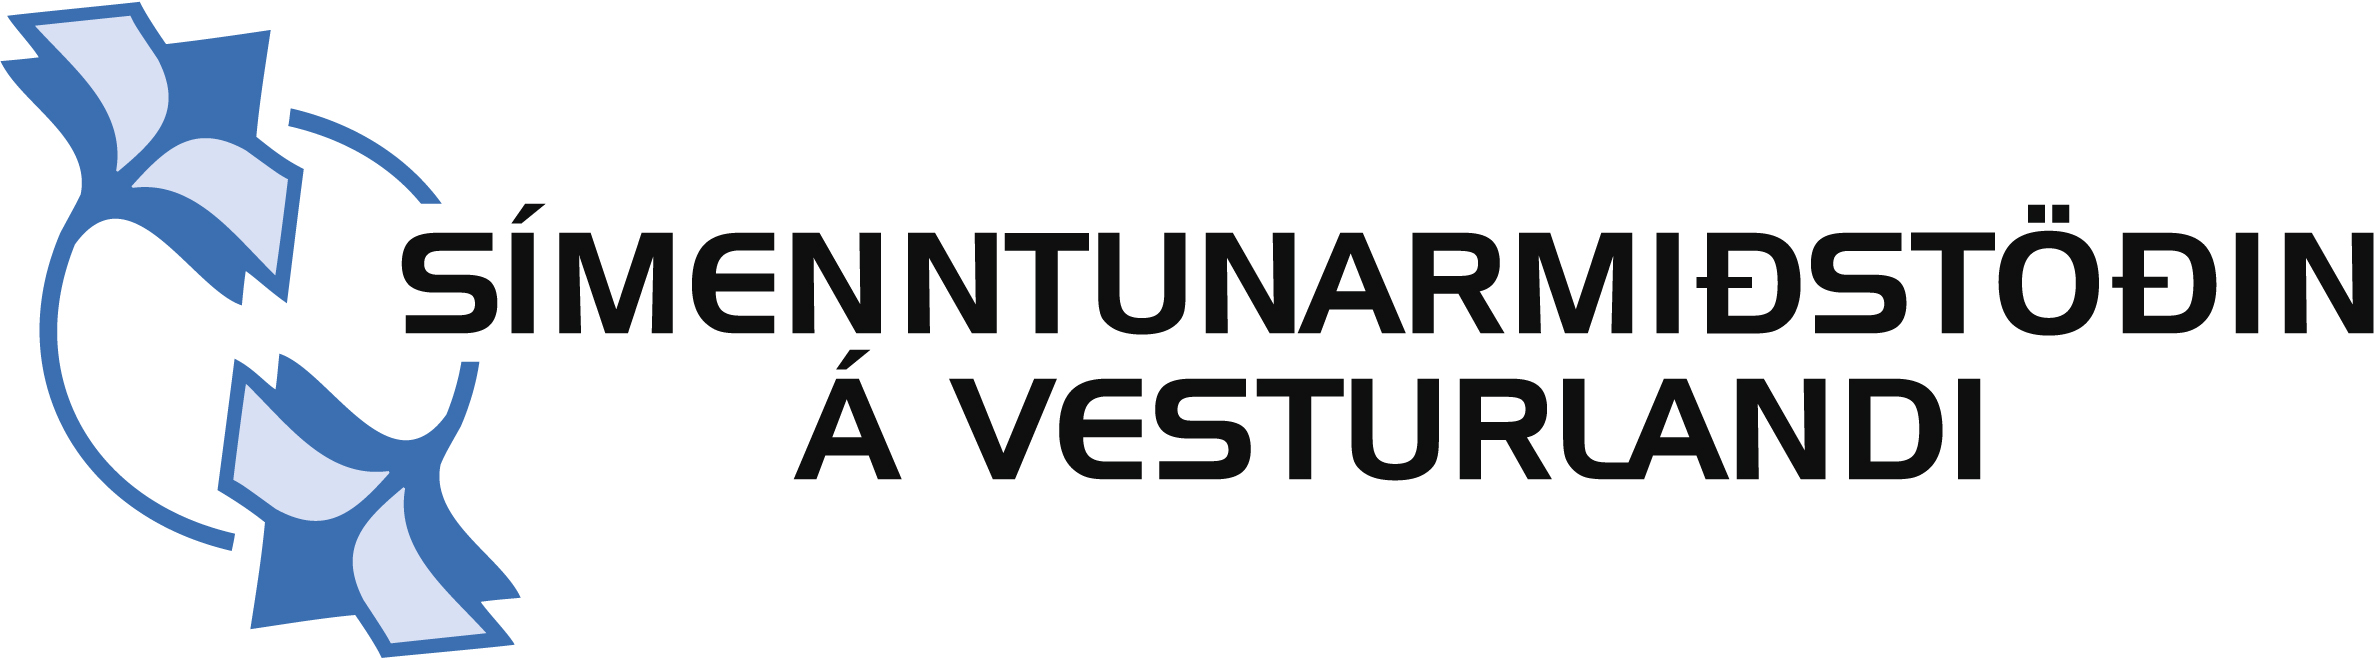 símenntunarmiðstöðin á vesturlandi logo